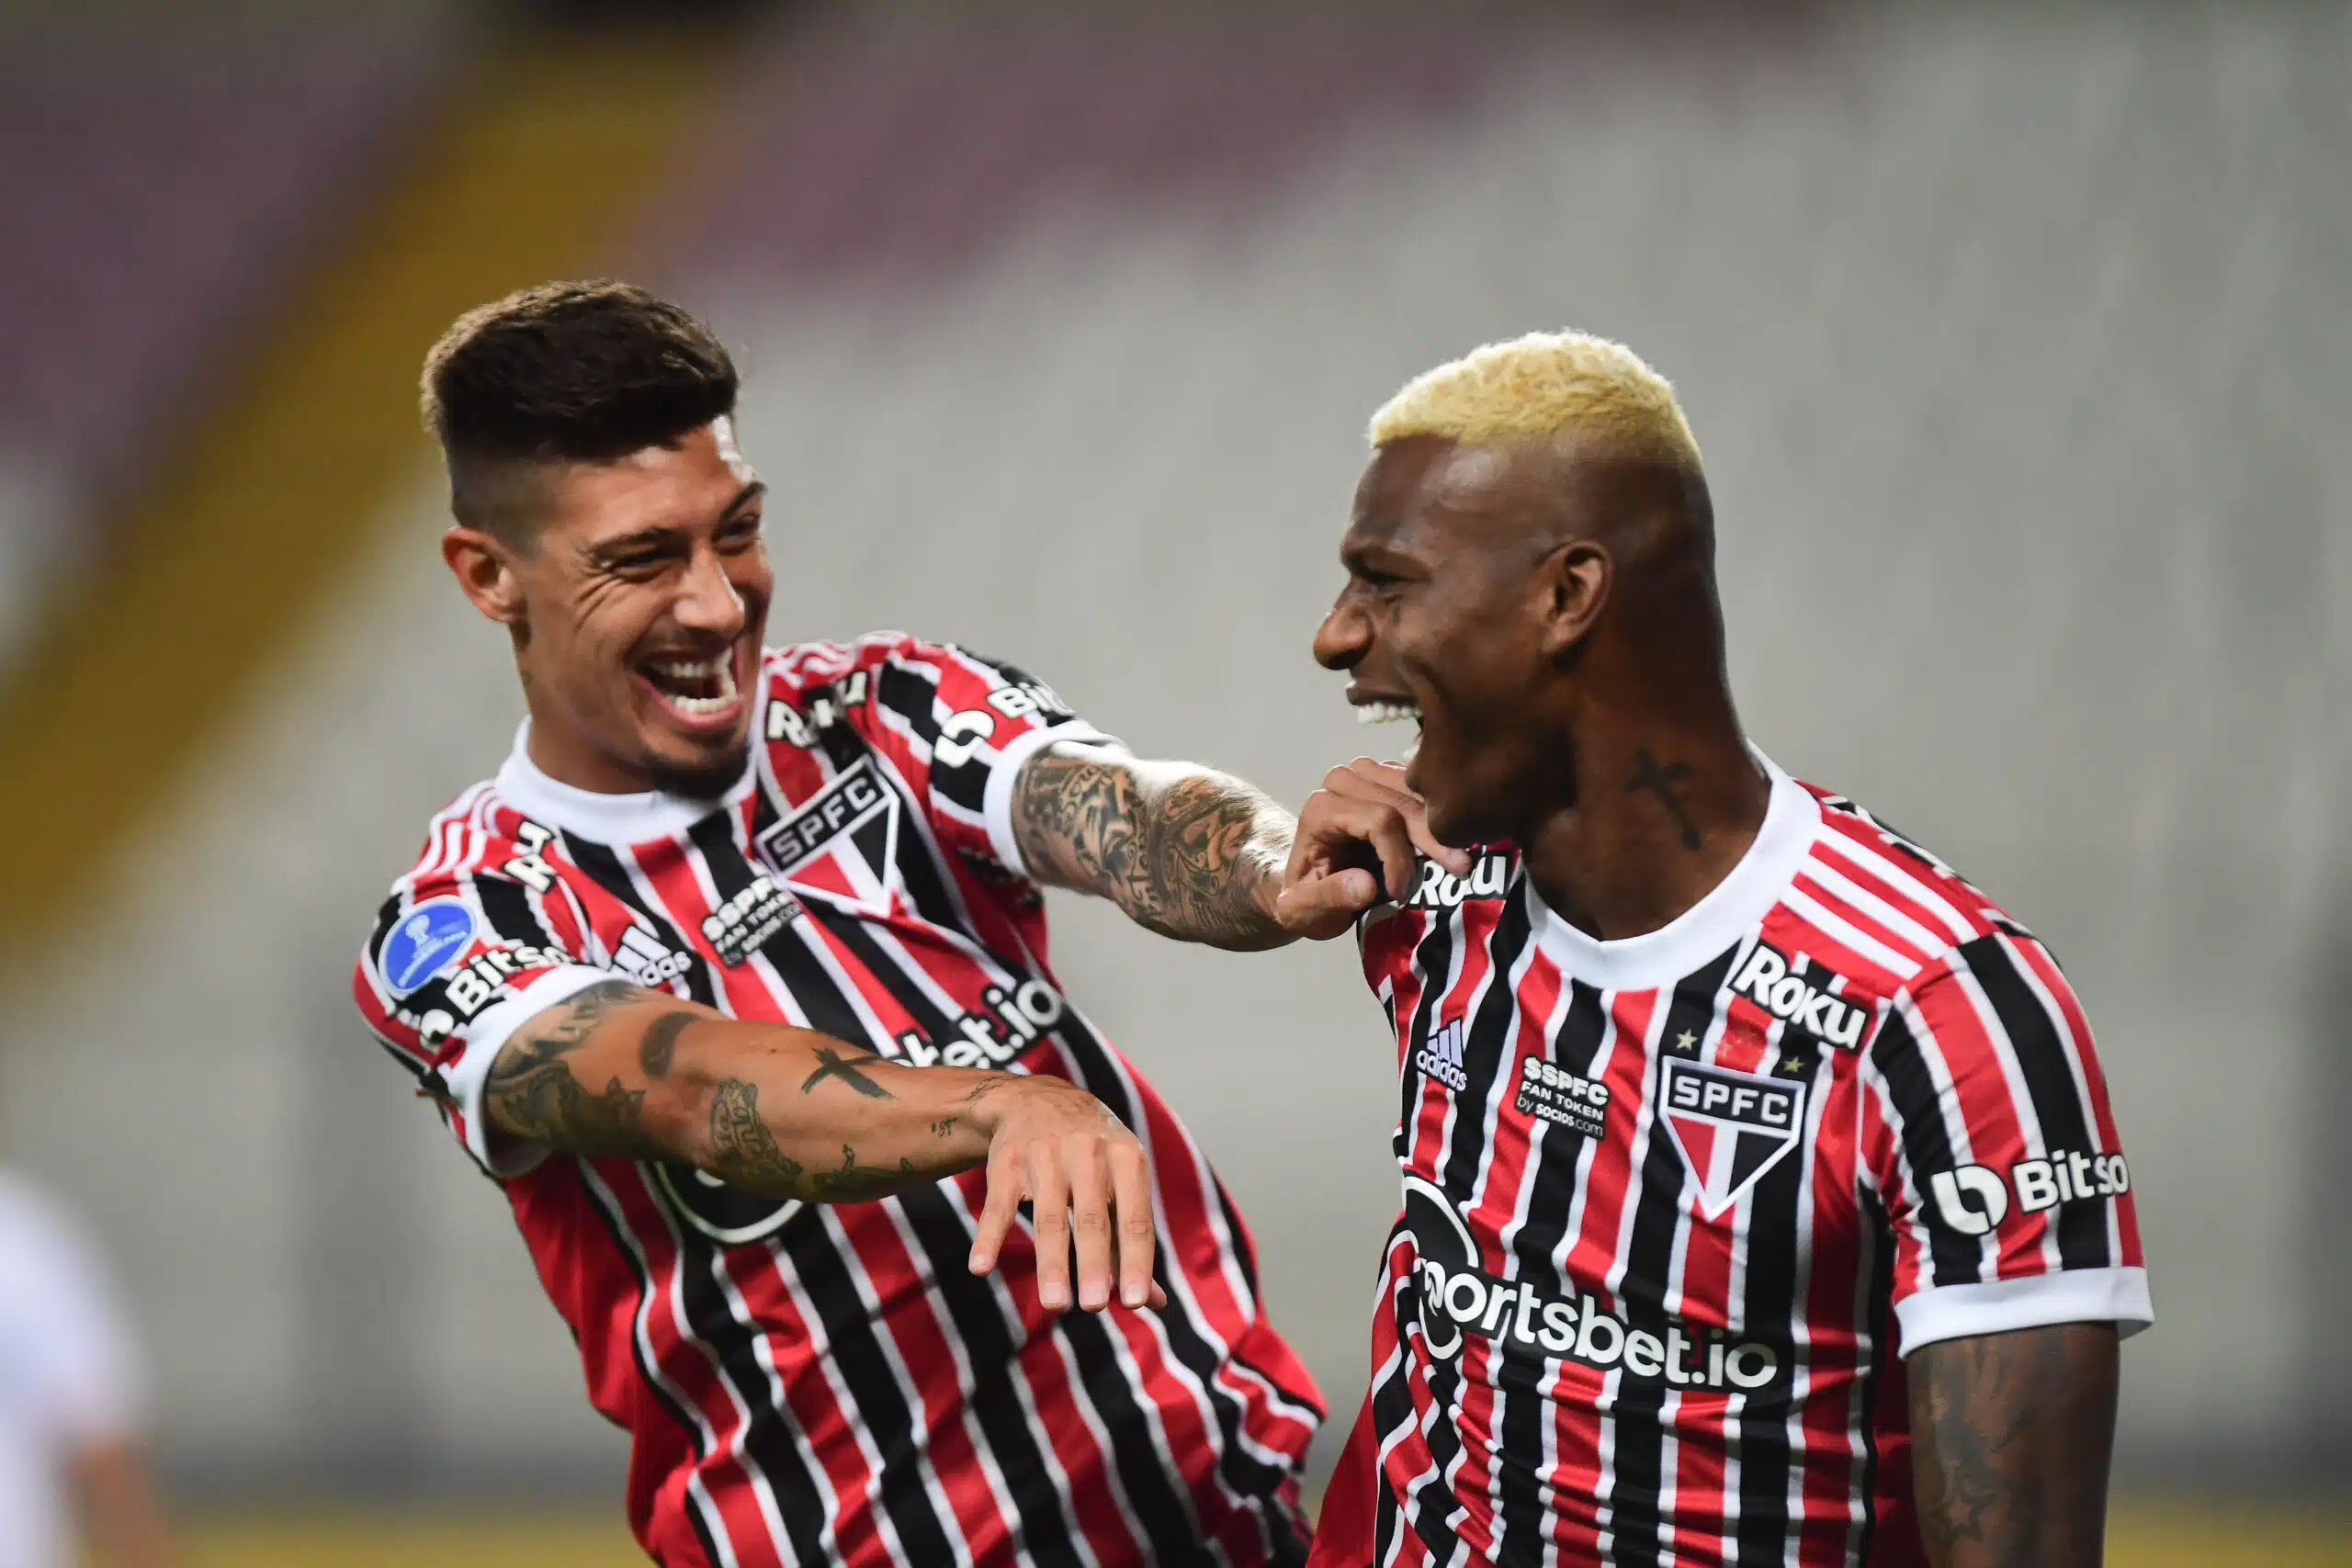 Mídia peruana repercute jogo do São Paulo